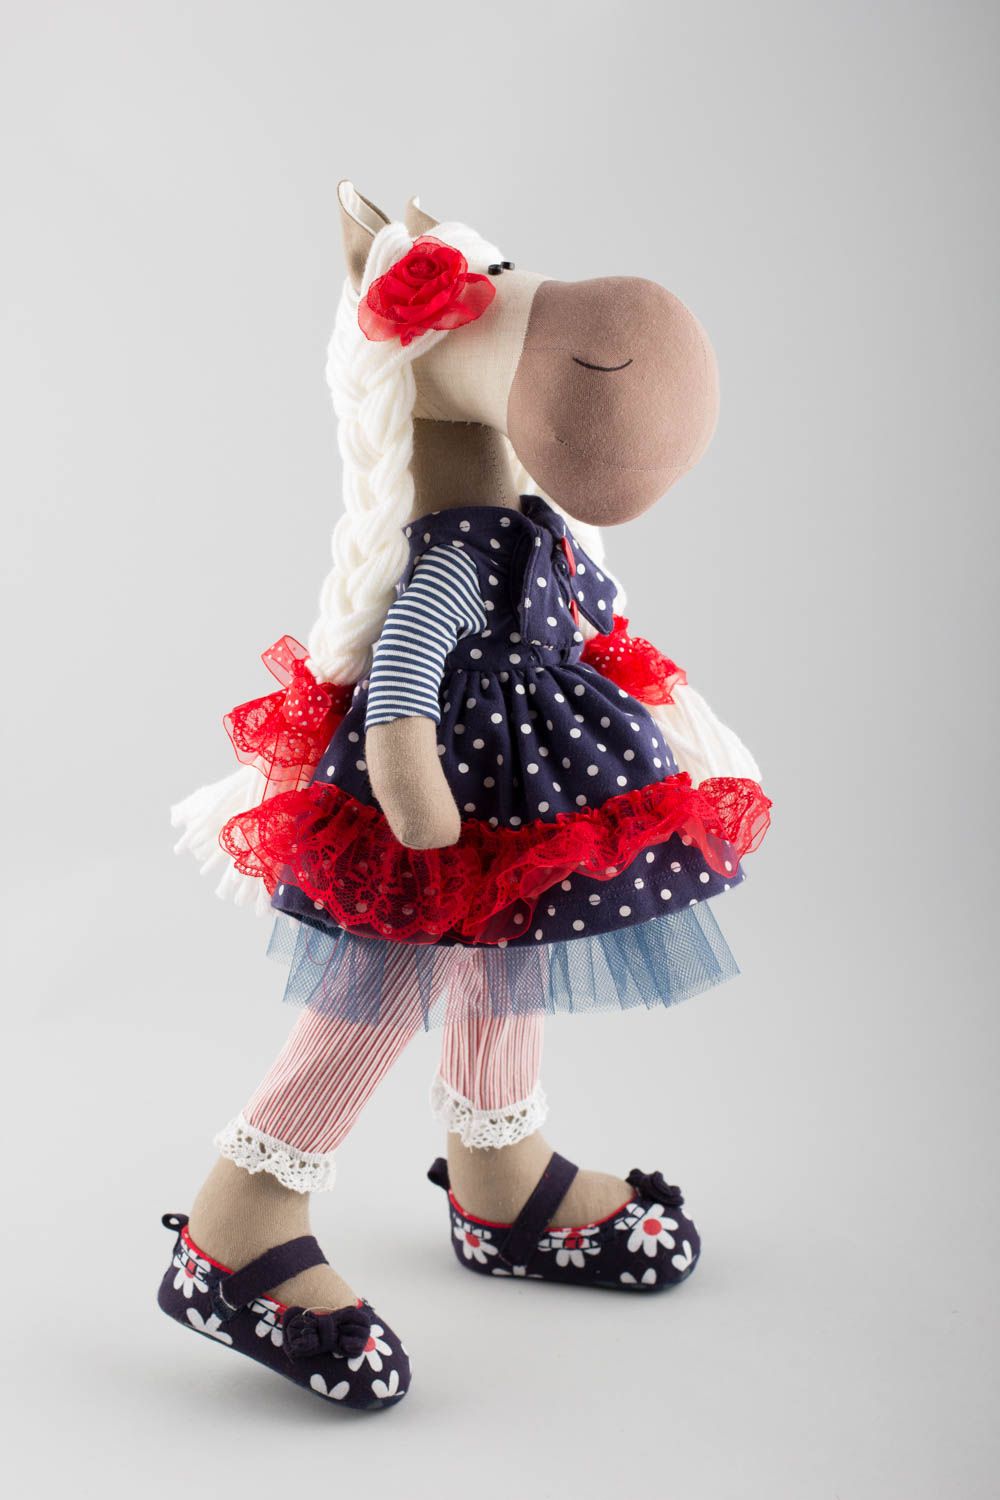 Textil Kuscheltier Pferd im Kleid grell schön modisch handmade für Kinder foto 3